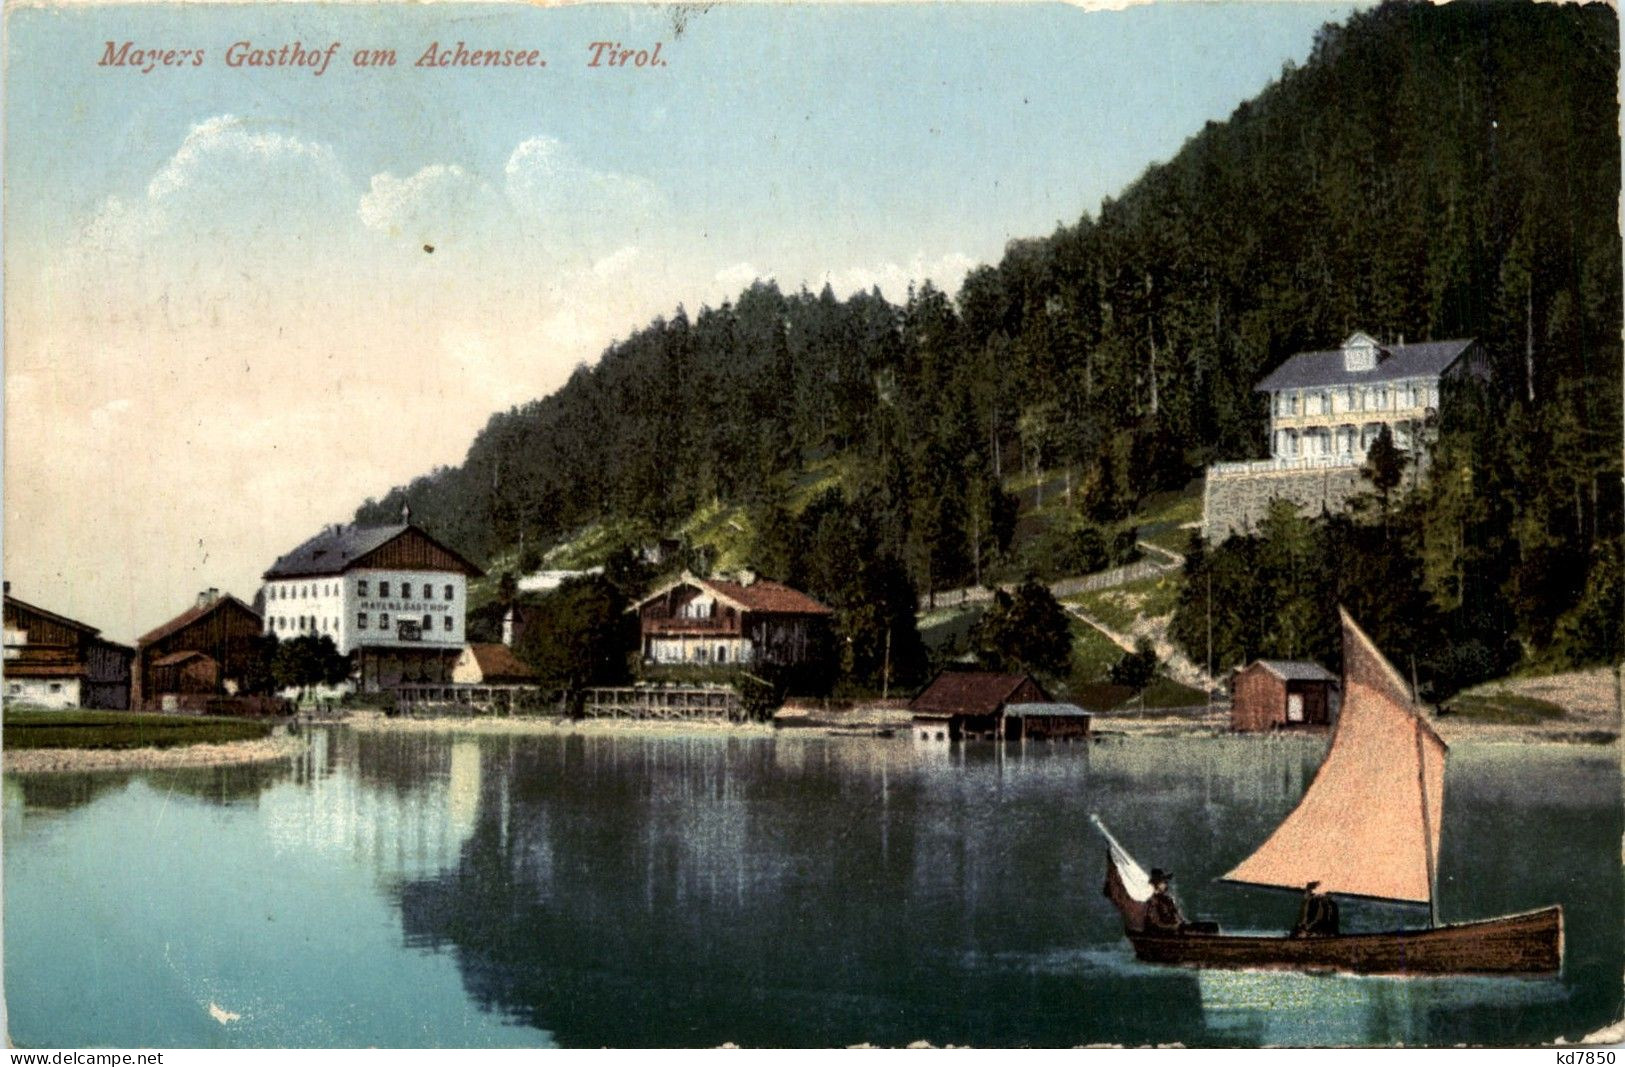 Achensee/Tirol Und Umgebung - Mayers Gasthof - Achenseeorte